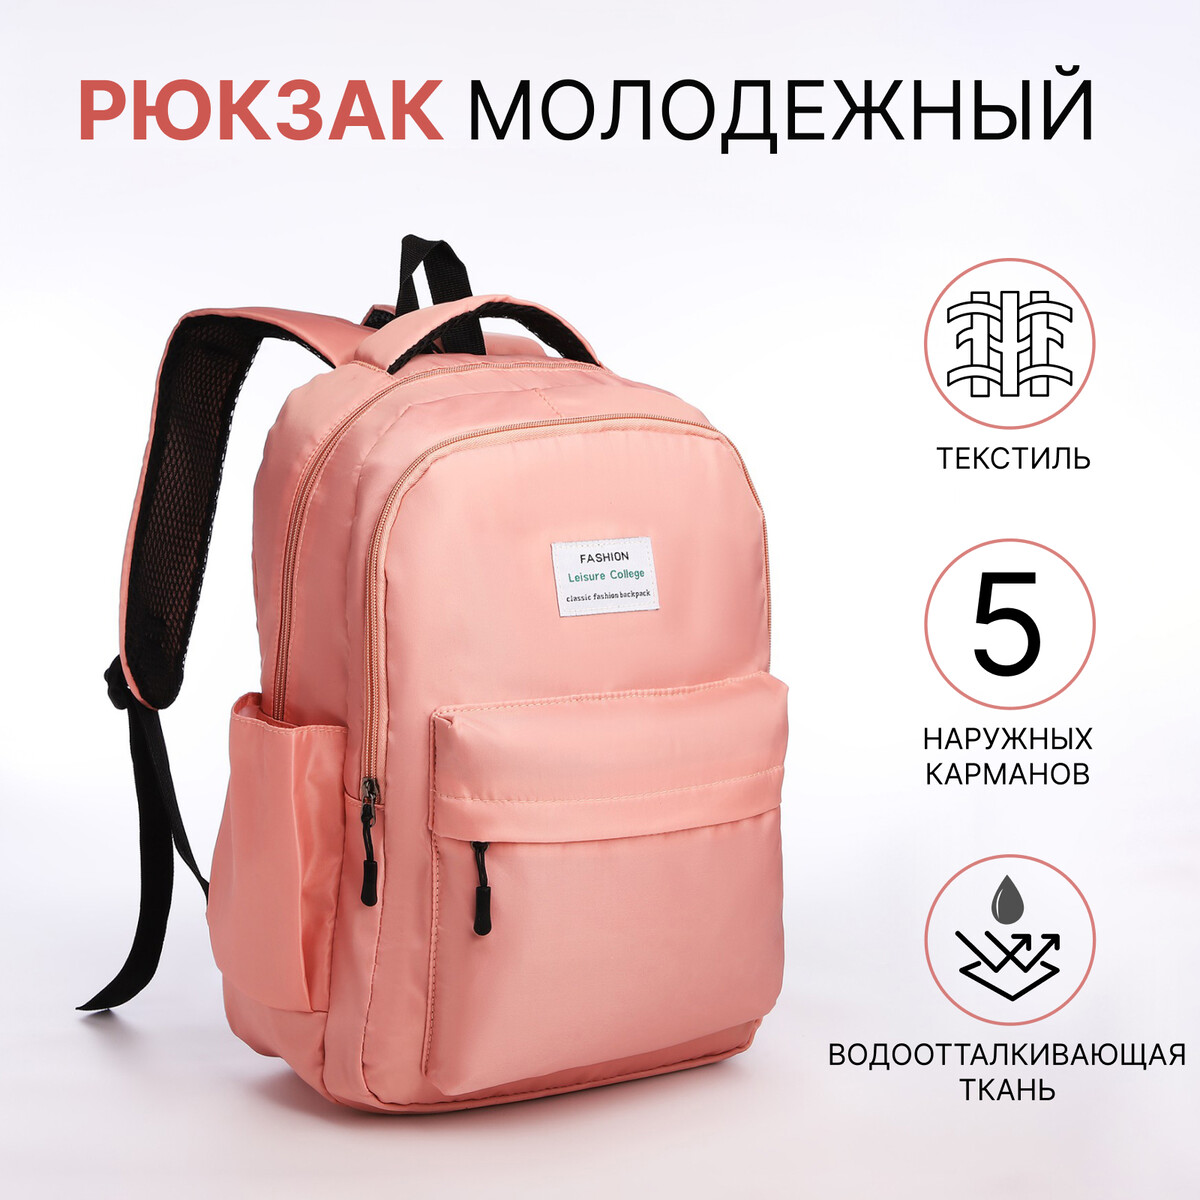 Рюкзак молодежный из текстиля на молнии, 5 карманов, цвет розовый рюкзак молодежный из текстиля на молнии 5 карманов белый